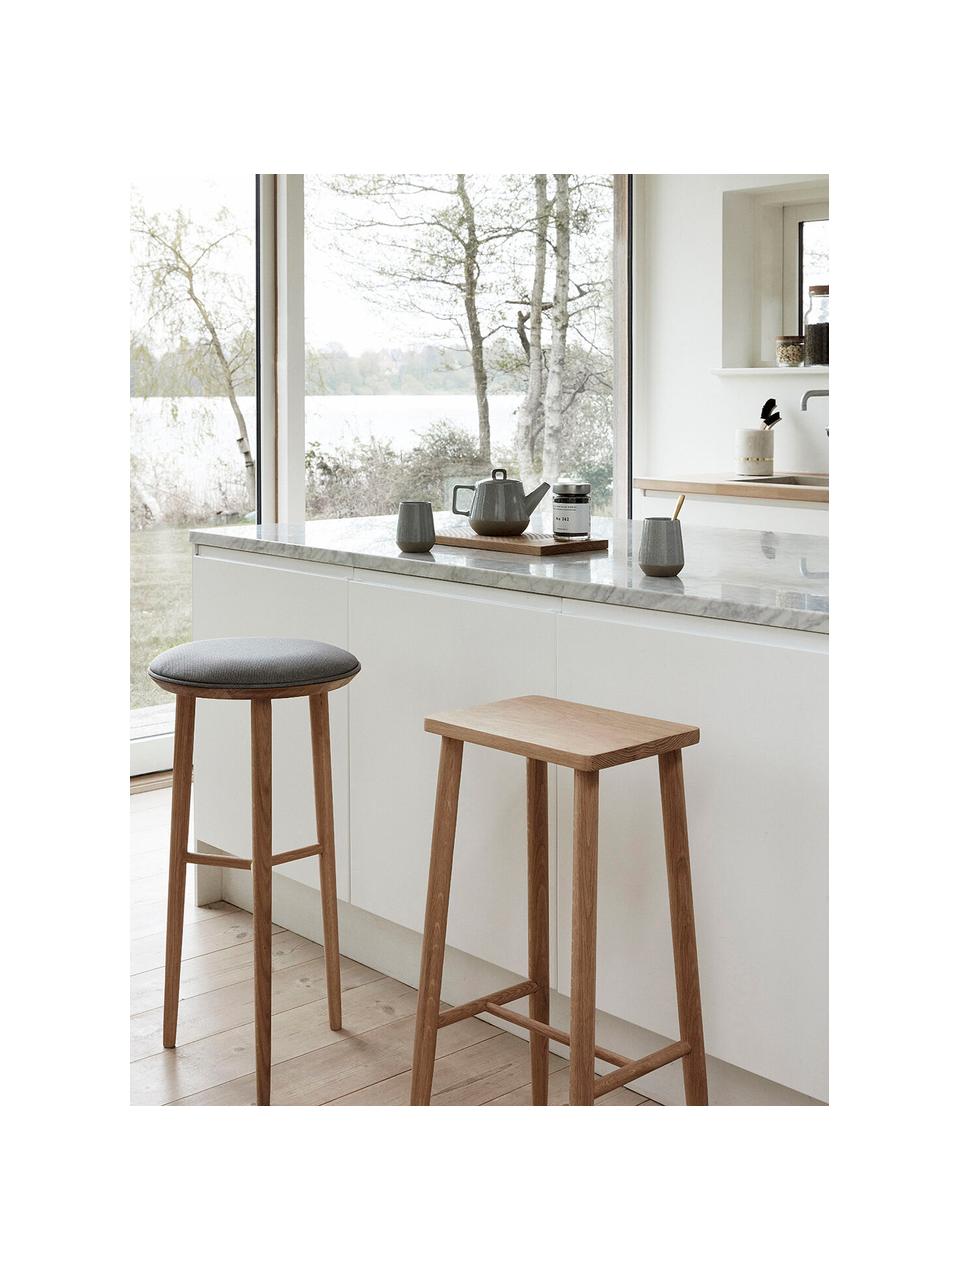 Barová stolička z dubového dřeva Folk, Dubové dřevo

Tento produkt je vyroben z udržitelných zdrojů dřeva s certifikací FSC®., Dubové dřevo, Š 35 cm, V 72 cm